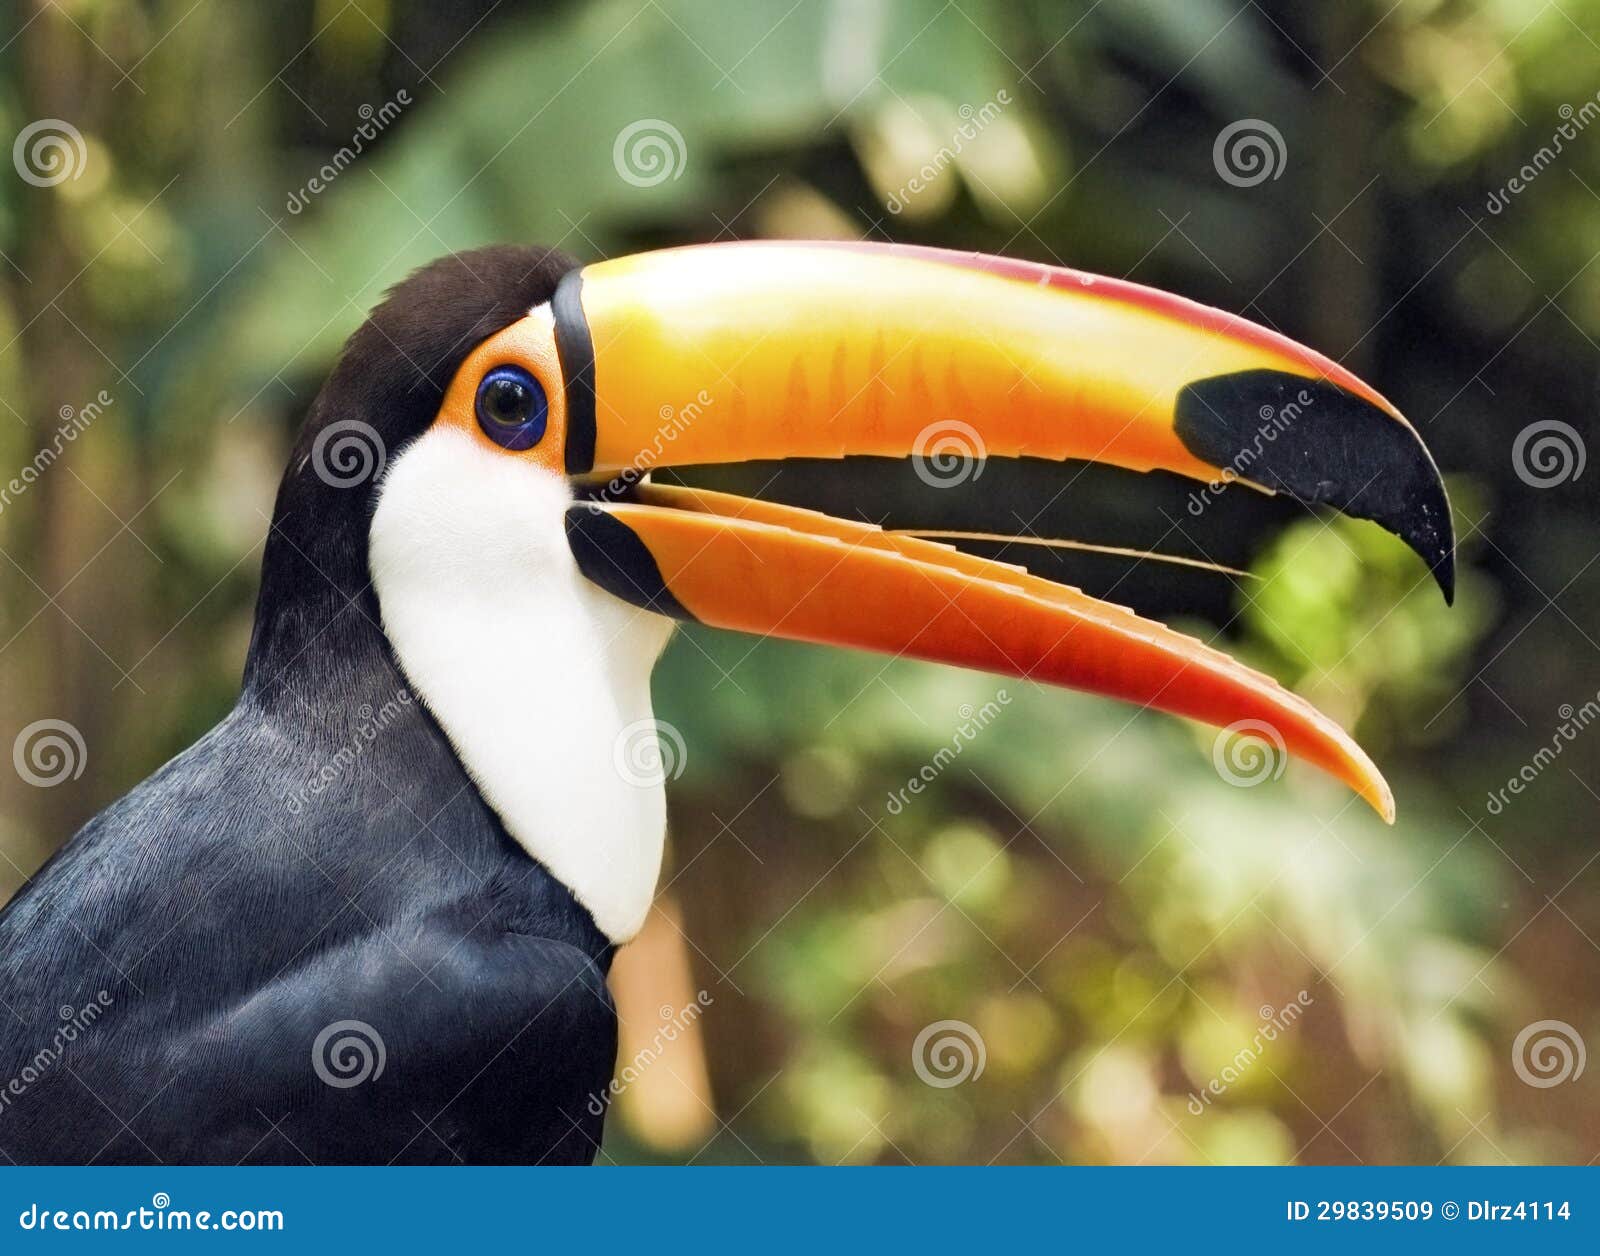 Bello profilo dell'uccello di Toucan con il becco semi aperto